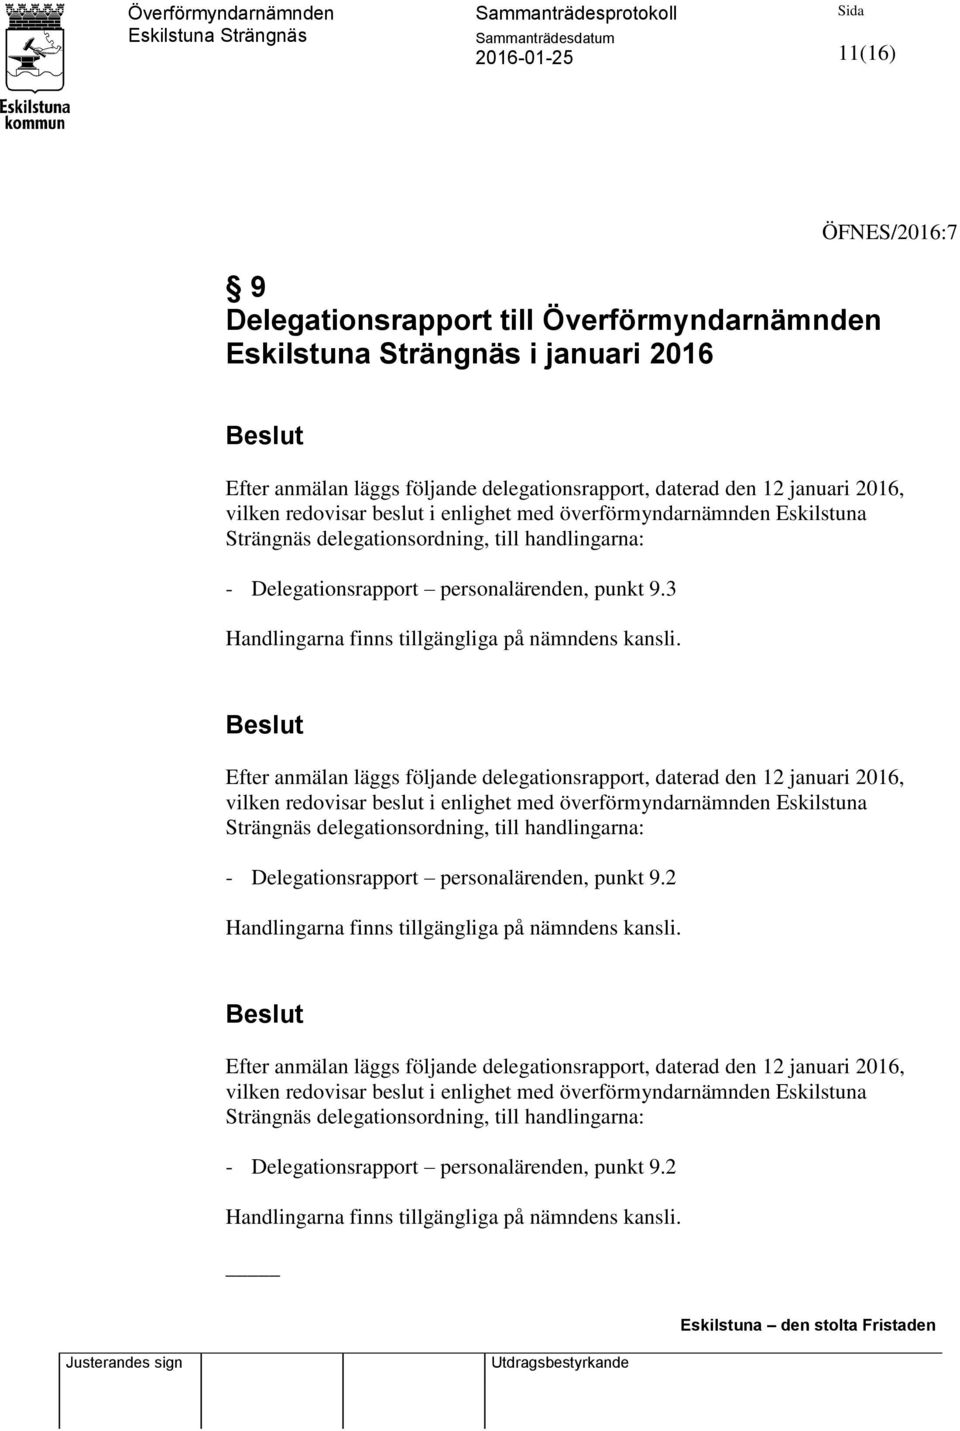 Efter anmälan läggs följande delegationsrapport, daterad den 12 januari 2016, vilken redovisar beslut i enlighet med överförmyndarnämnden Eskilstuna Strängnäs delegationsordning, till handlingarna: -